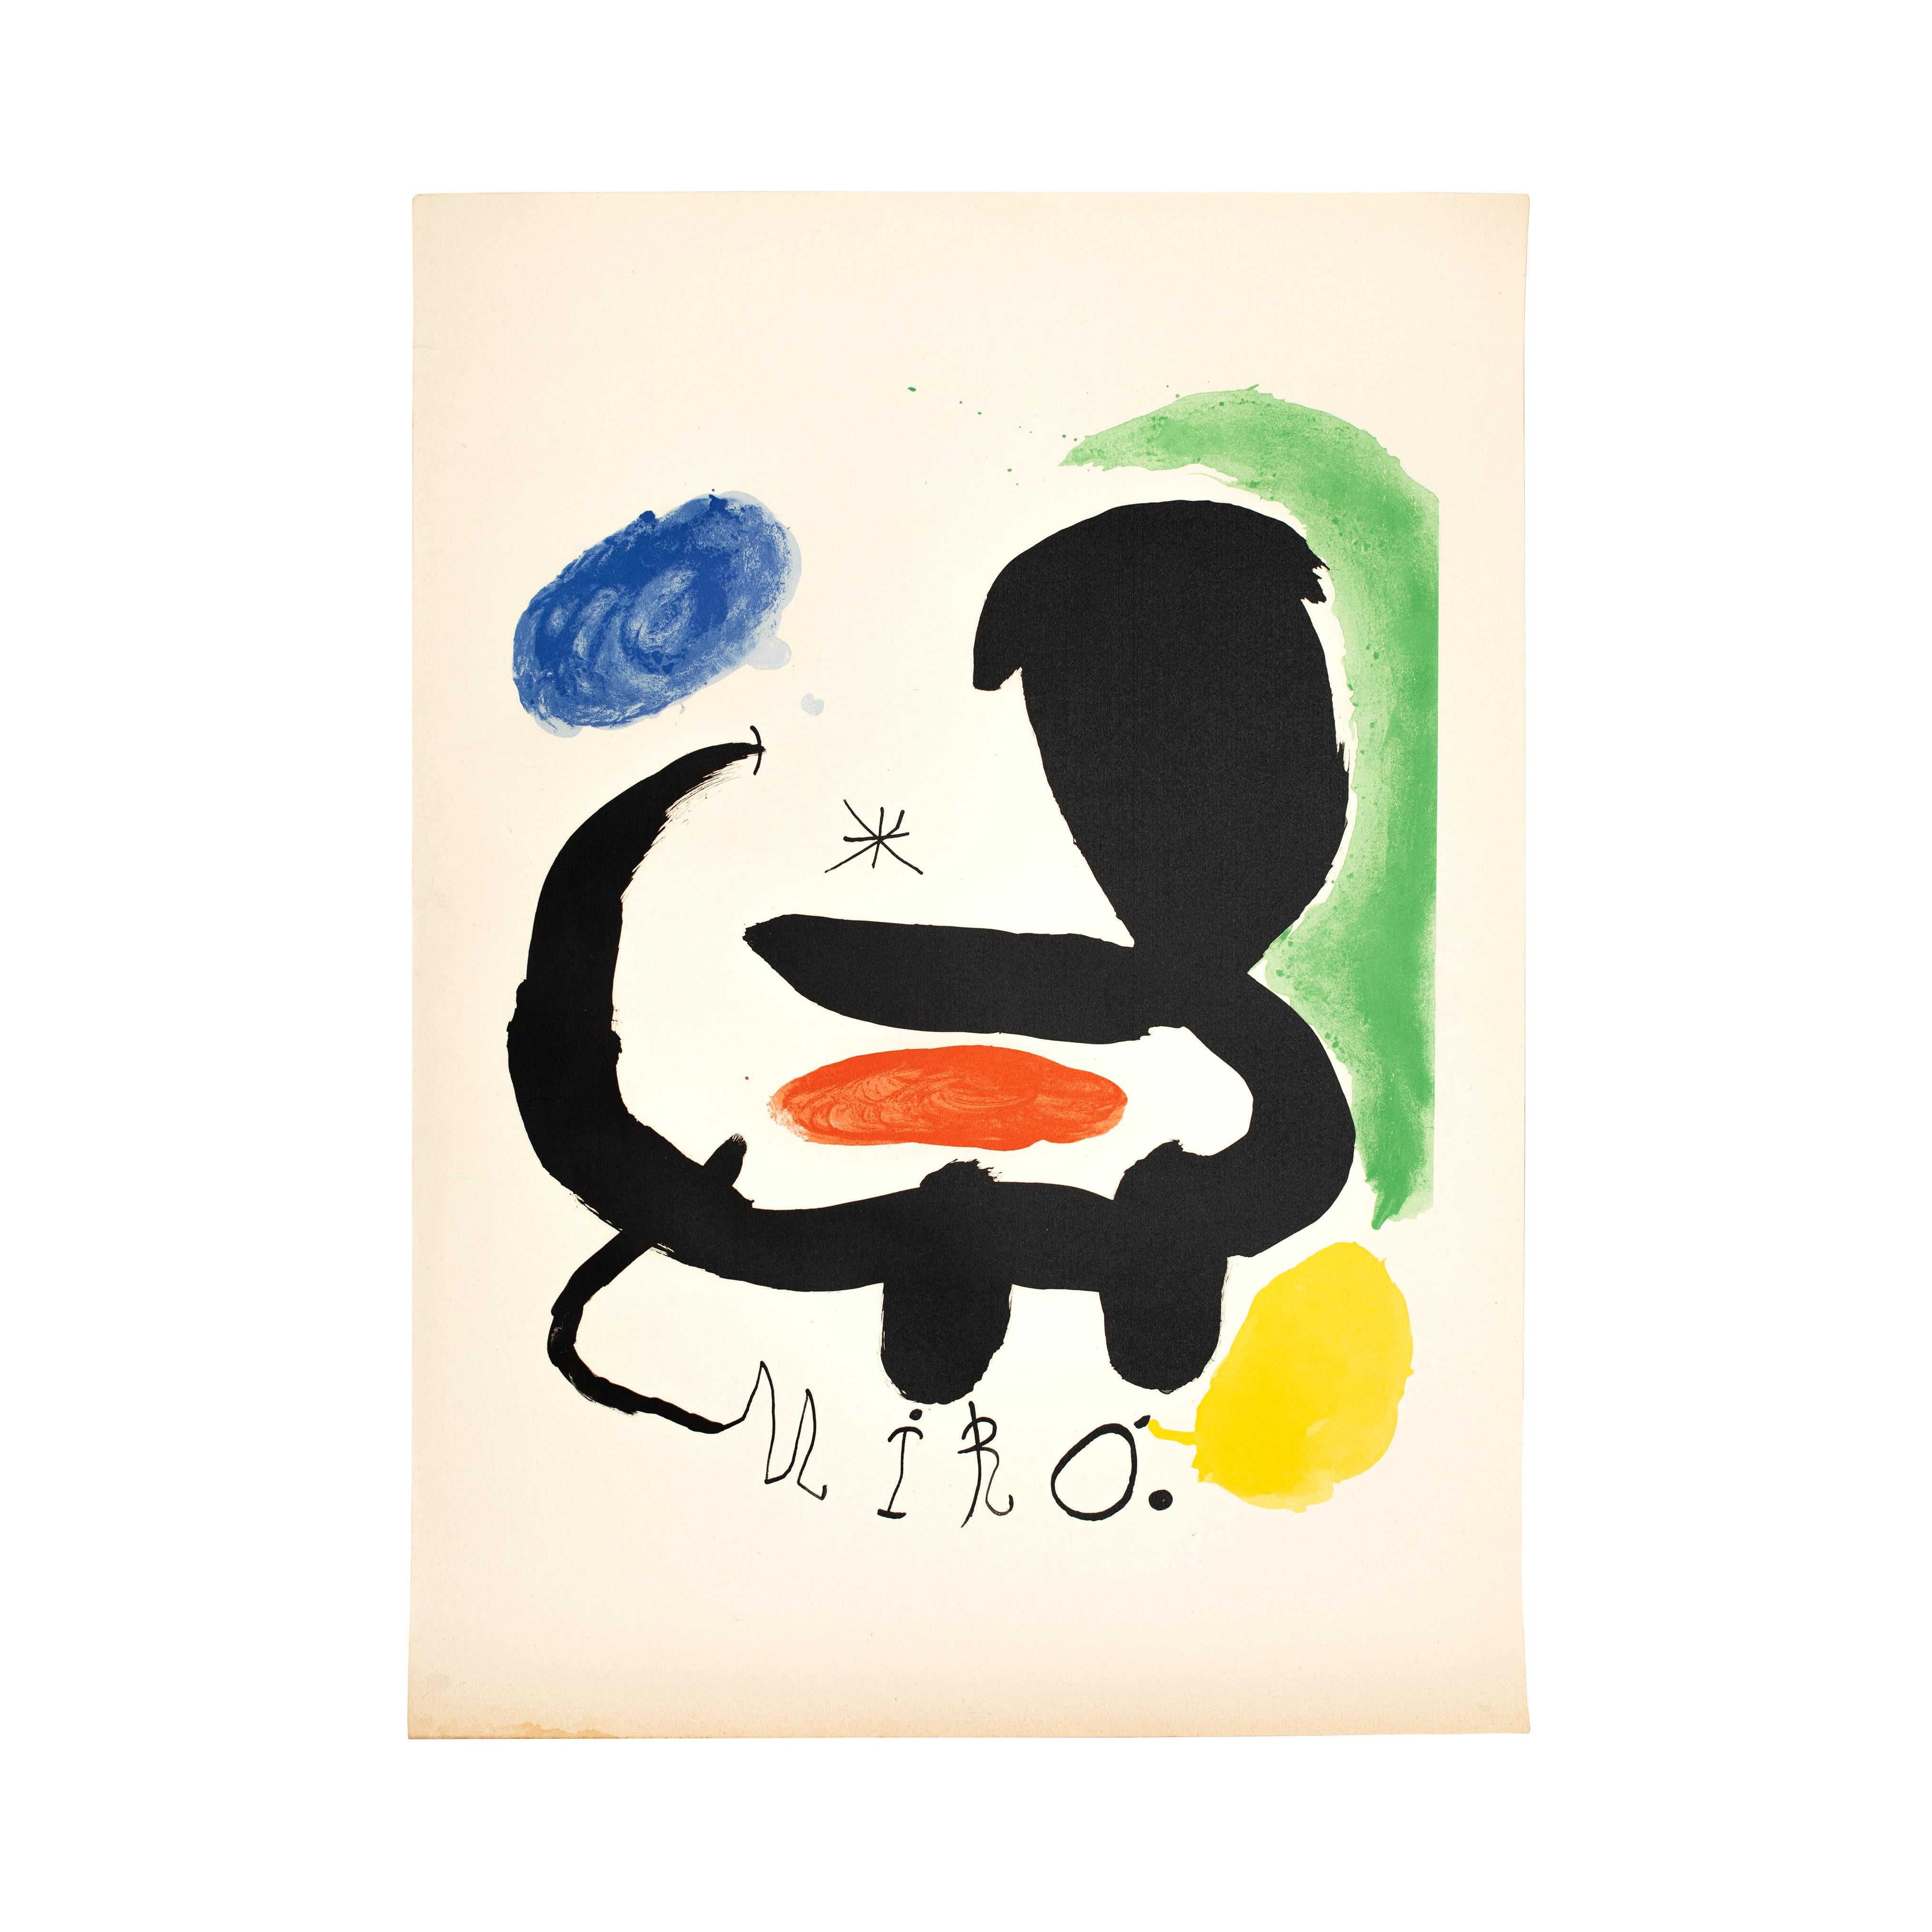 Lithographie von Joan Miro, um 1950

Auf dem Stein signiert.

Originaler Zustand mit geringen alters- und gebrauchsbedingten Abnutzungserscheinungen, der eine schöne Patina aufweist.

Joan Miró i Ferrà (katalanisch) 20. April 1893 - 25.